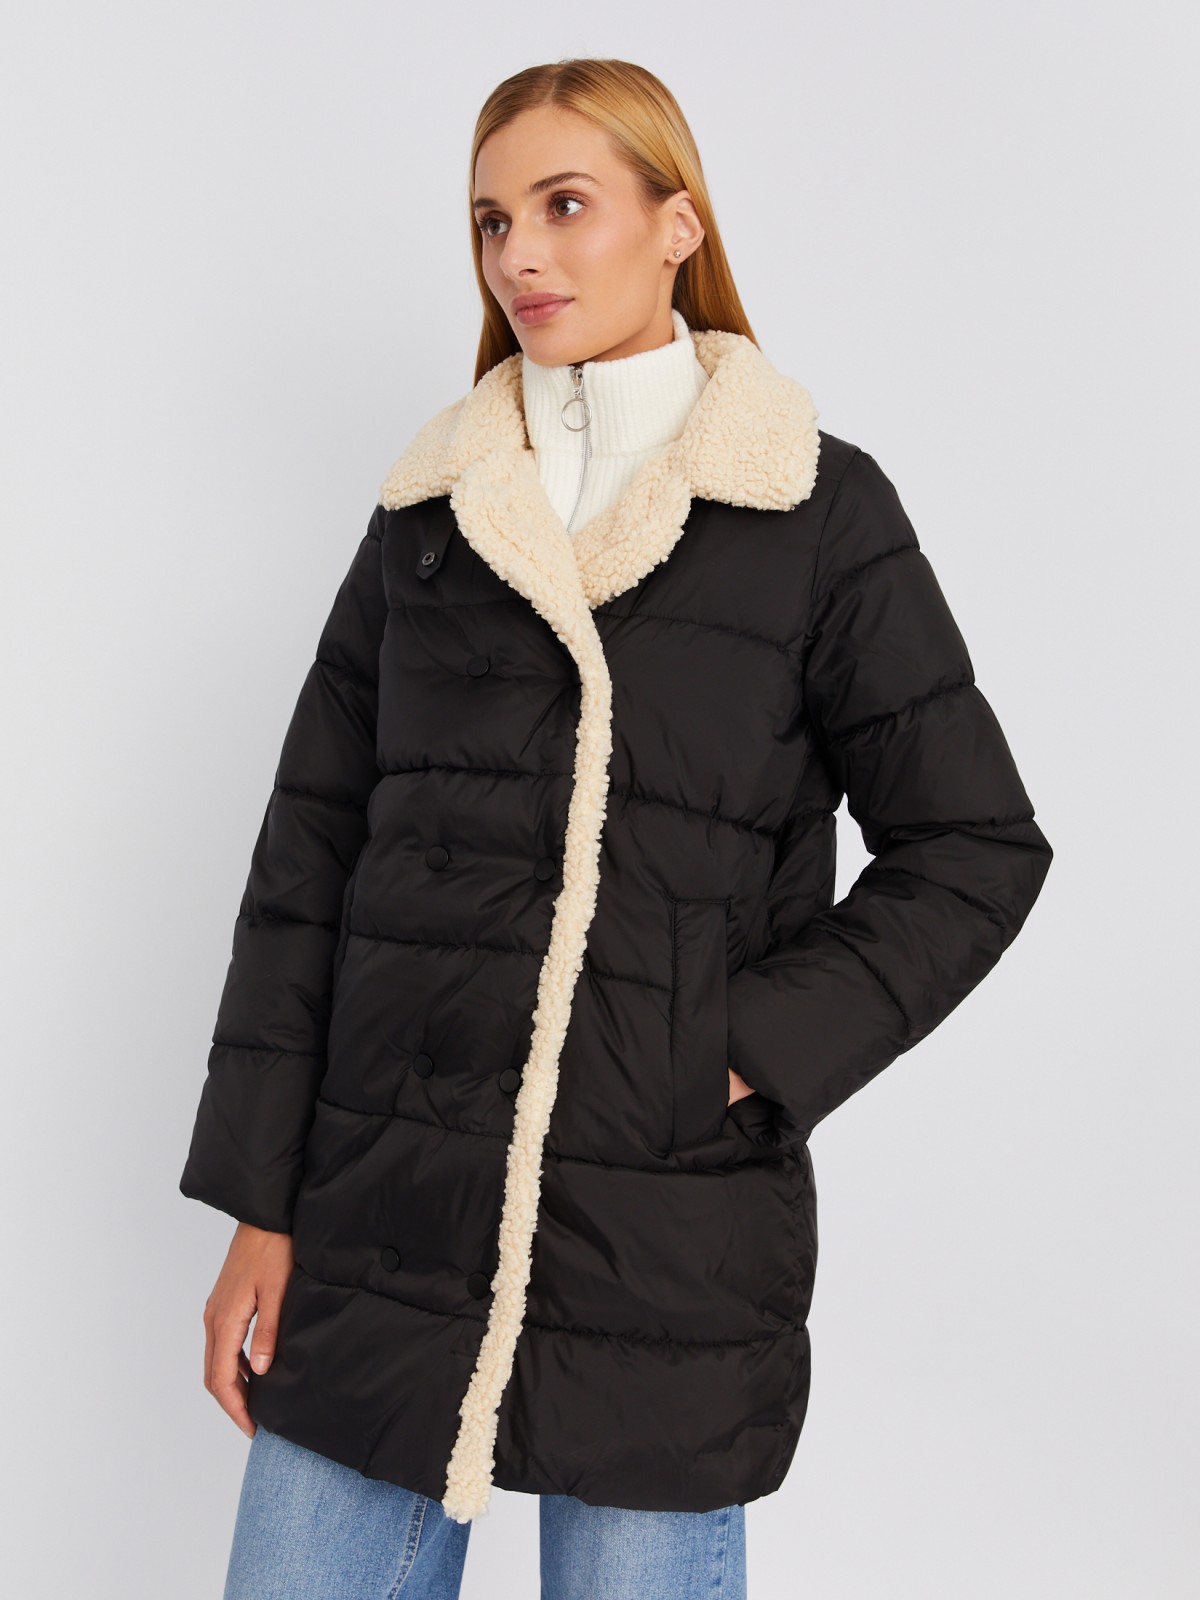 Тёплая стёганая куртка-пальто с отложным воротником и отделкой из искусственного меха zolla 023335239014, цвет черный, размер XS - фото 3